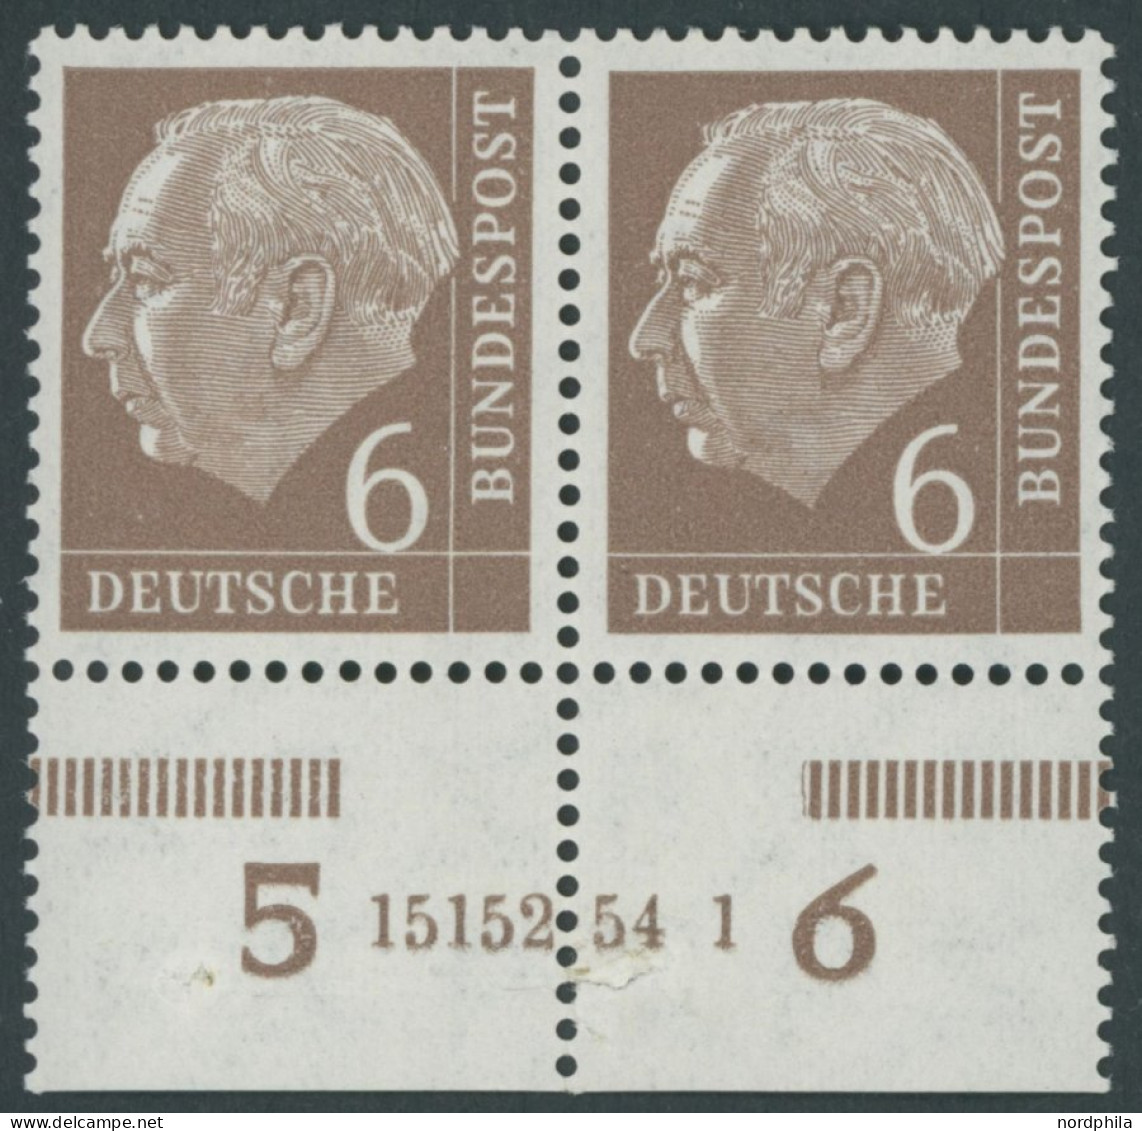 BUNDESREPUBLIK 180xHAN **, 1954, 6 Pf. Heuss, Unterrandpaar Mit HAN 15152.54 1, (Klammerspur), Marken  Postfrisch, Prach - Ungebraucht